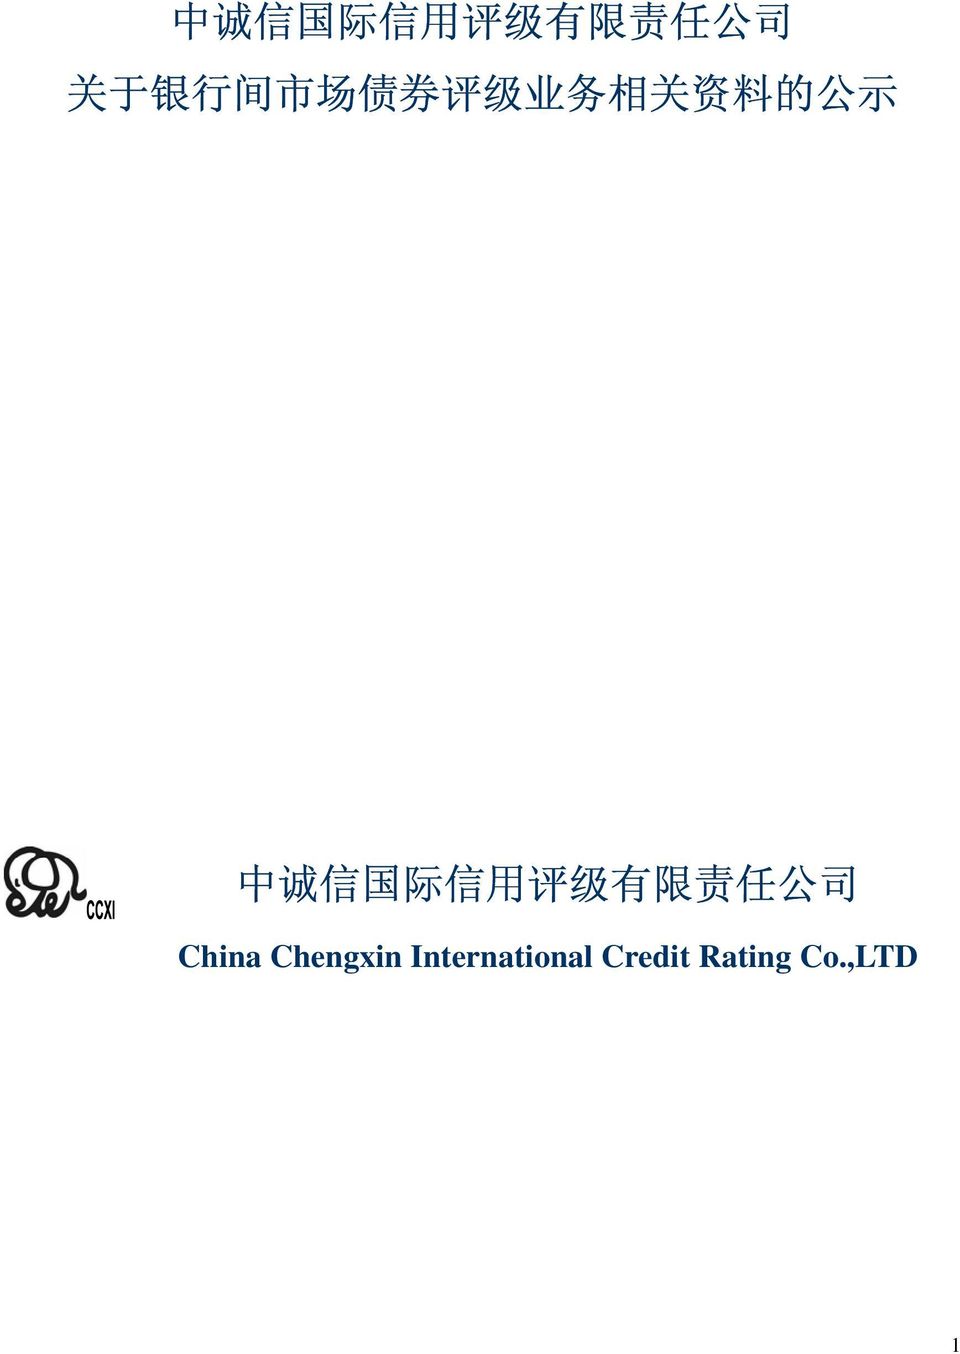 国 际 信 用 评 级 有 限 责 任 公 司 China